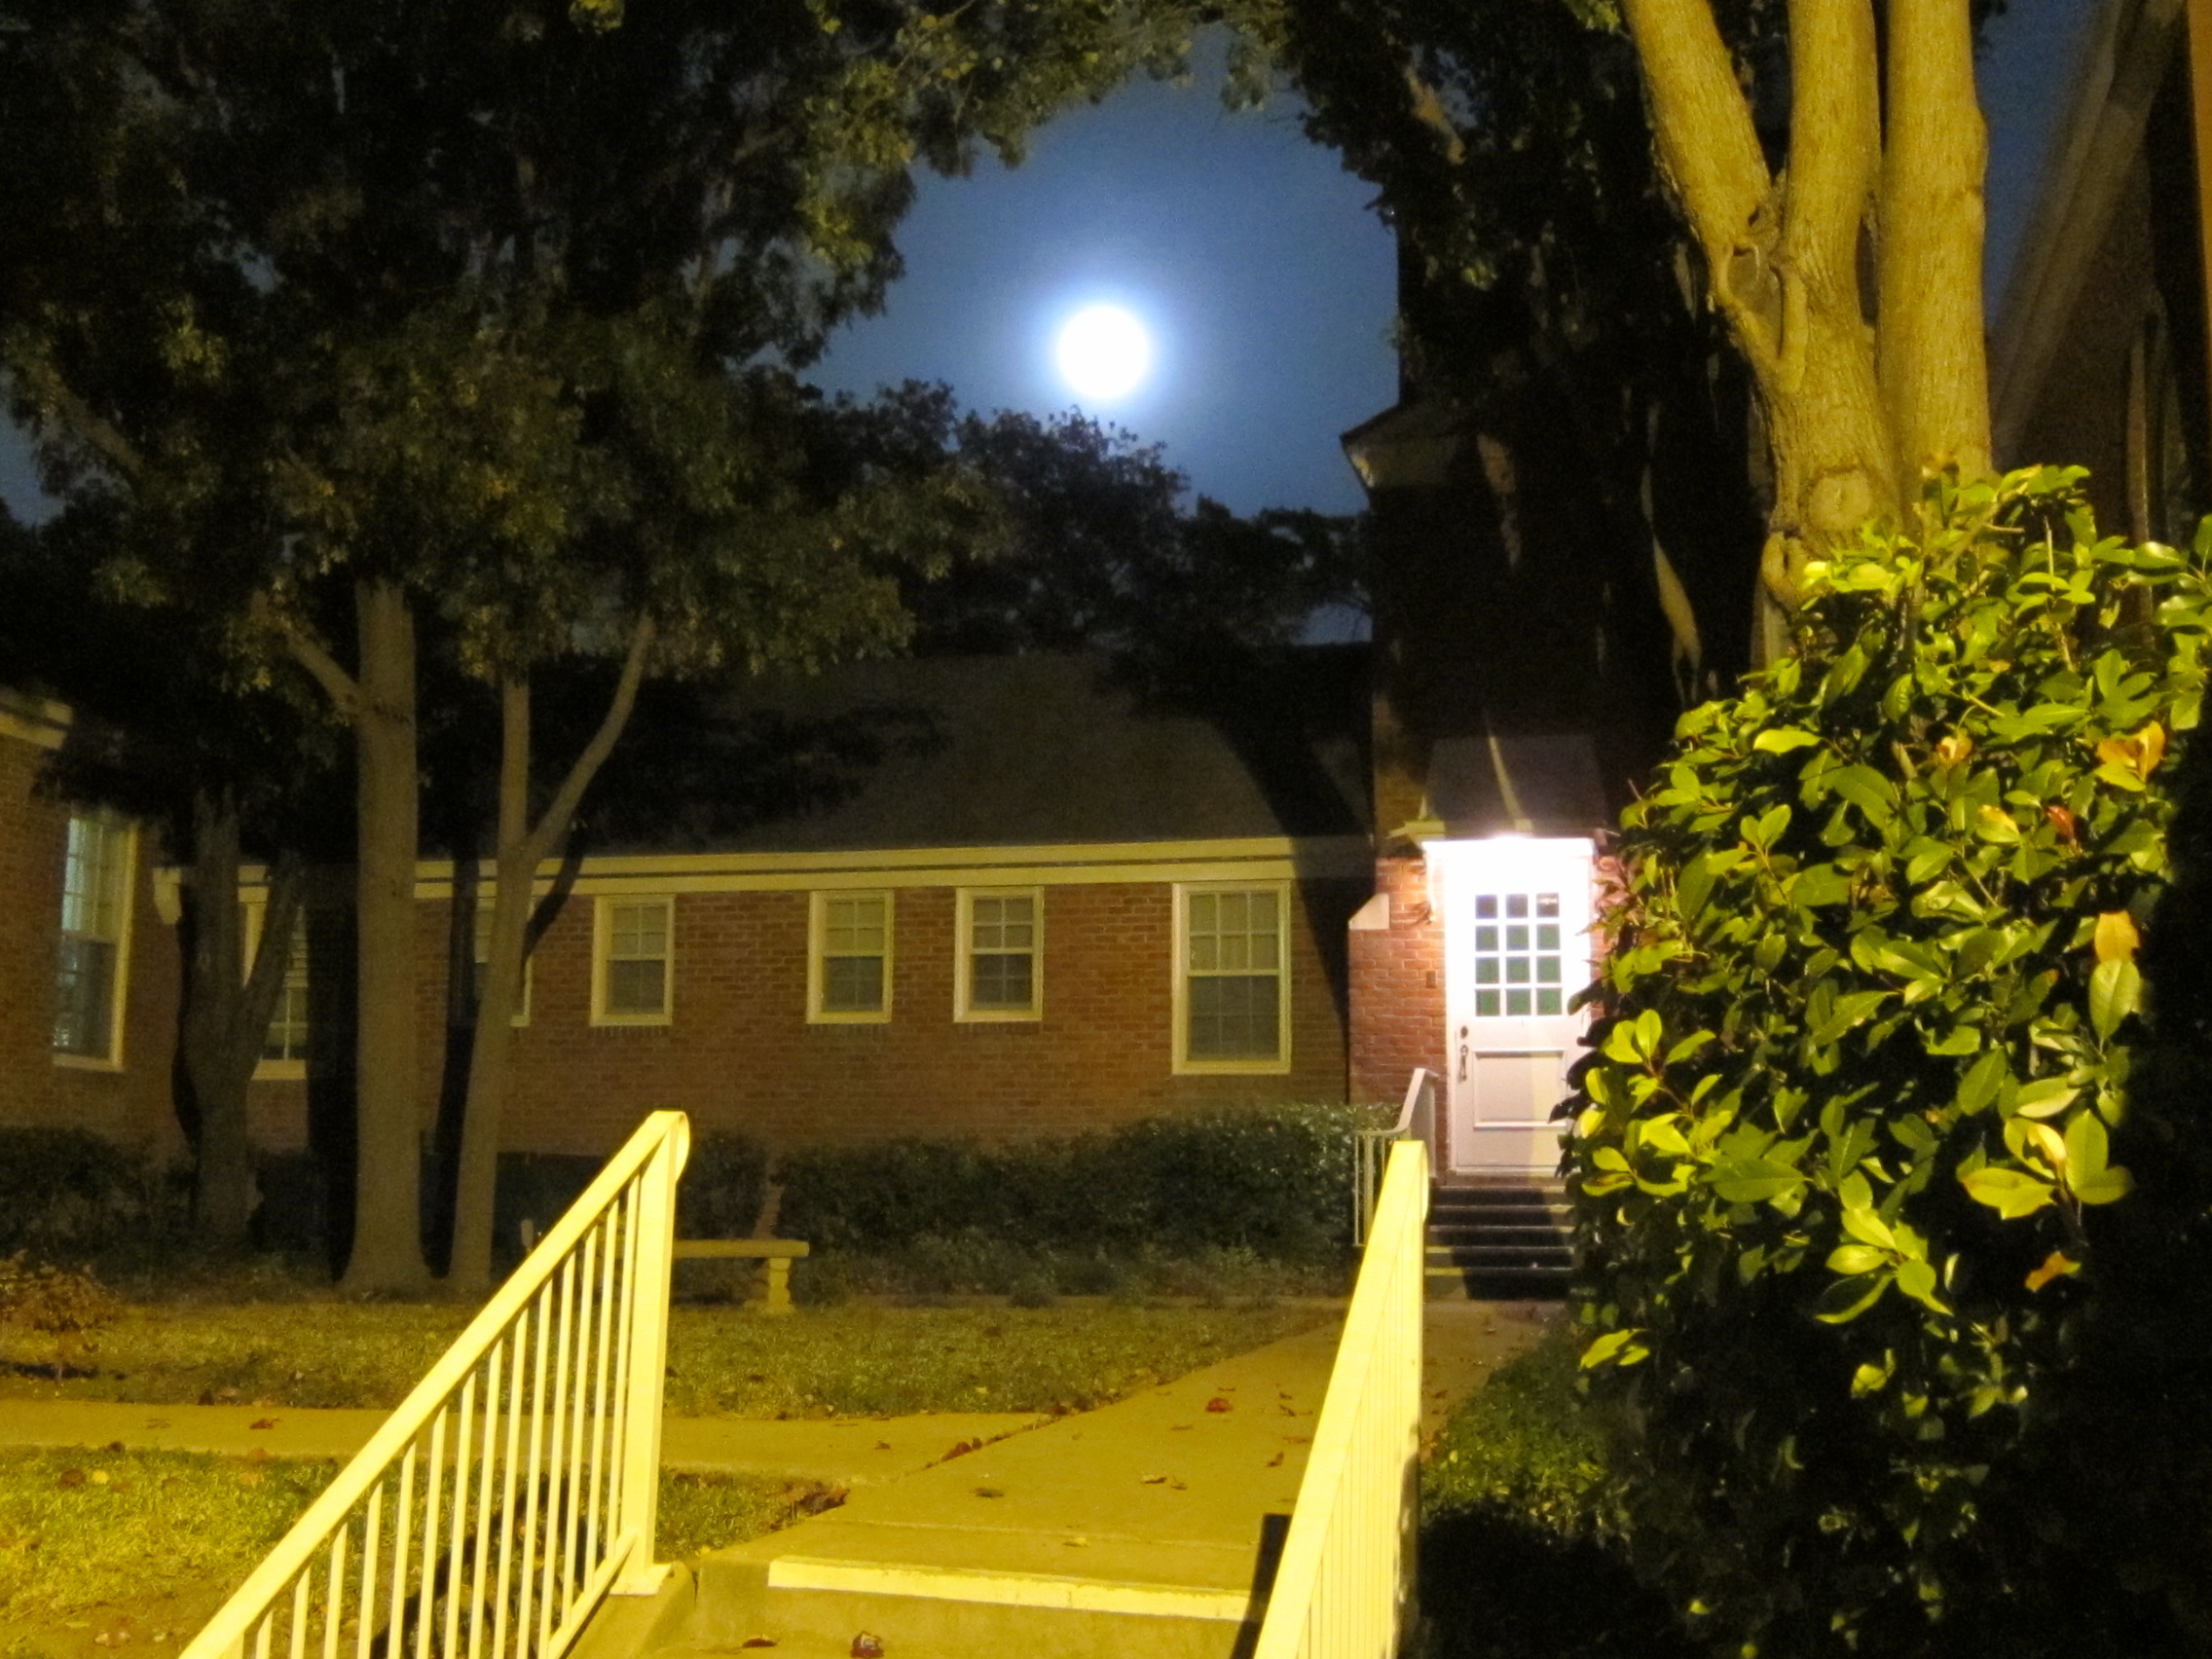 Full Moon Over the Back Door